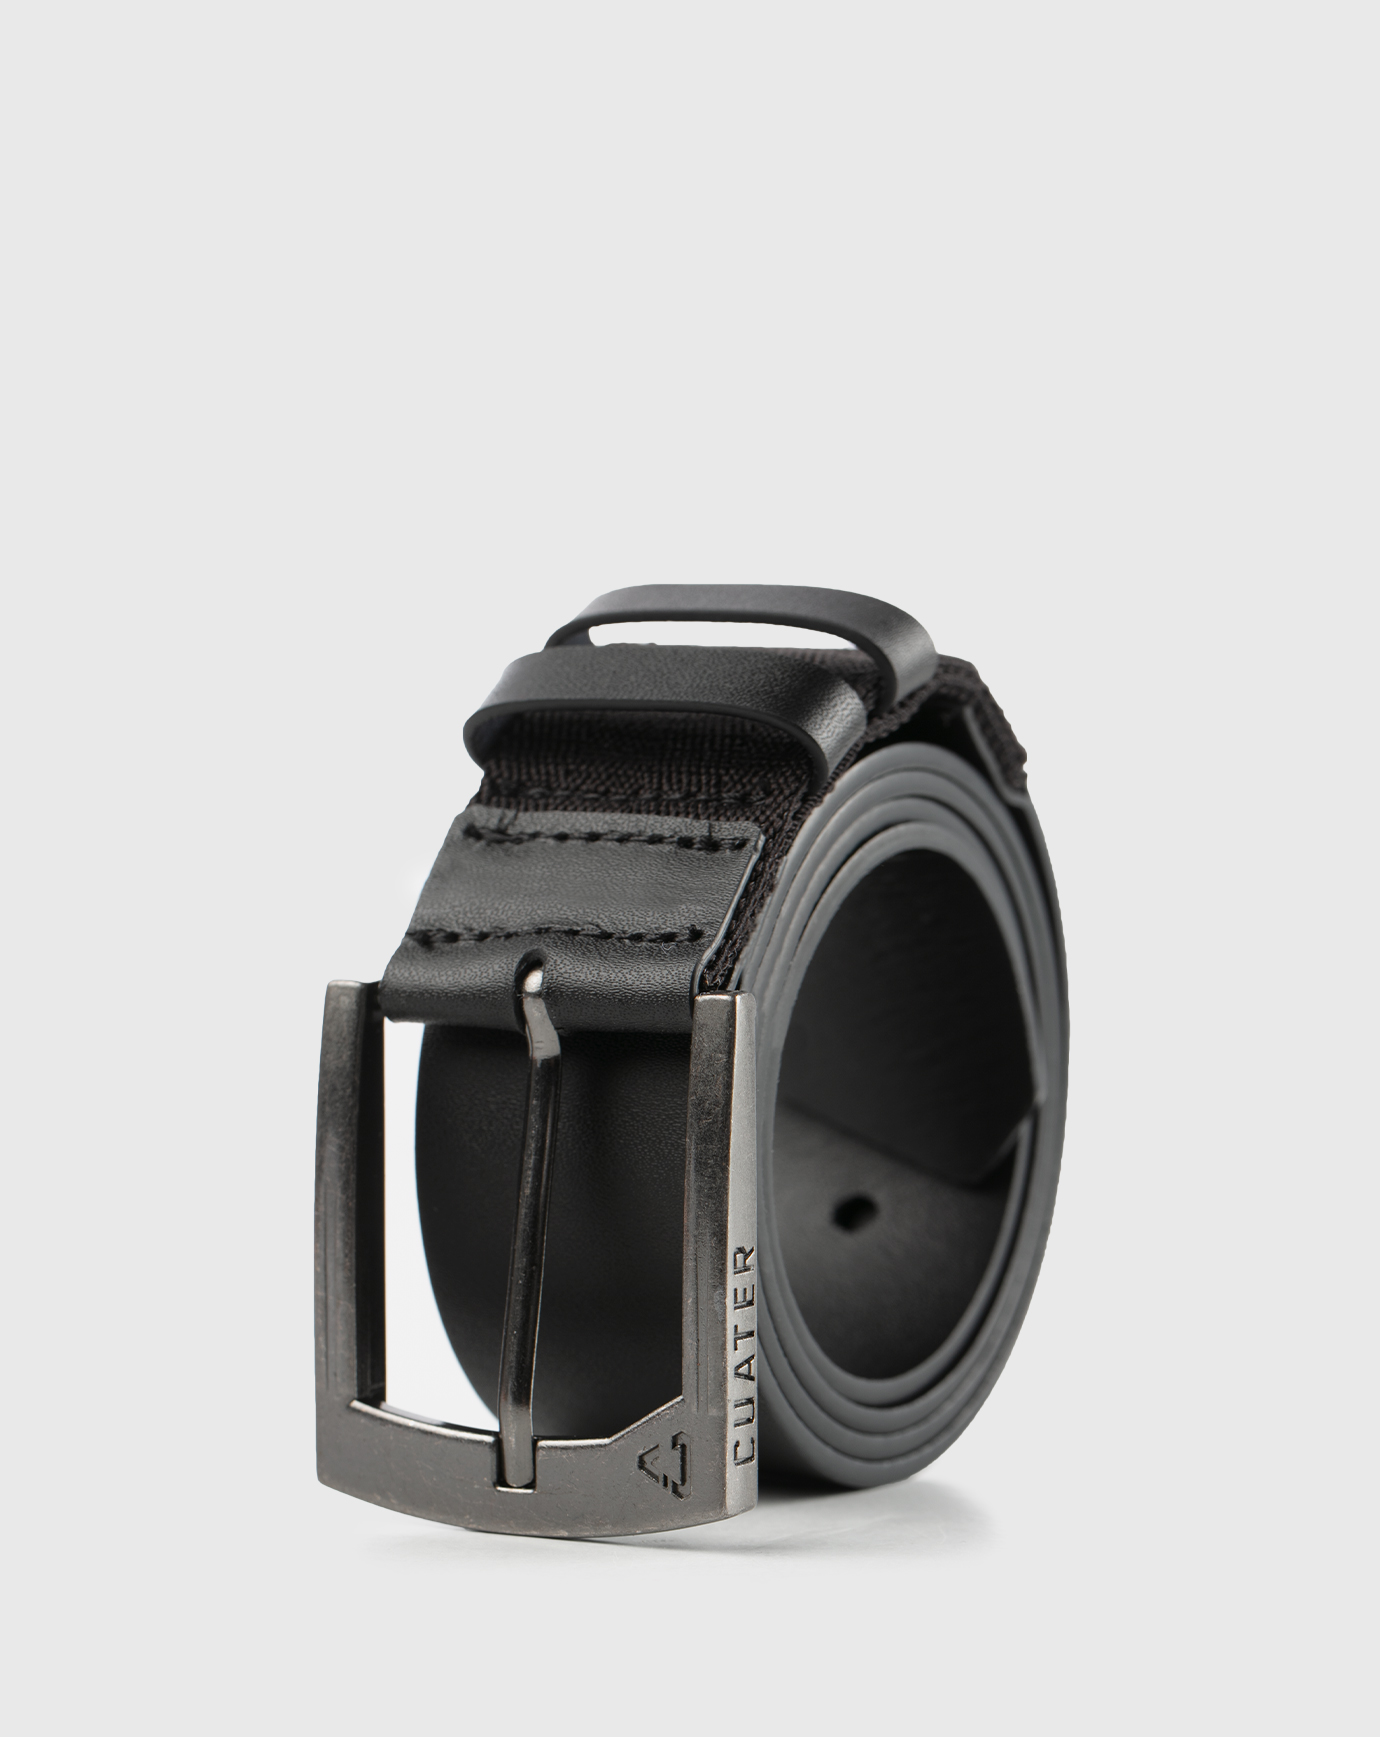 Yves Saint Laurent Men's Belts for sale